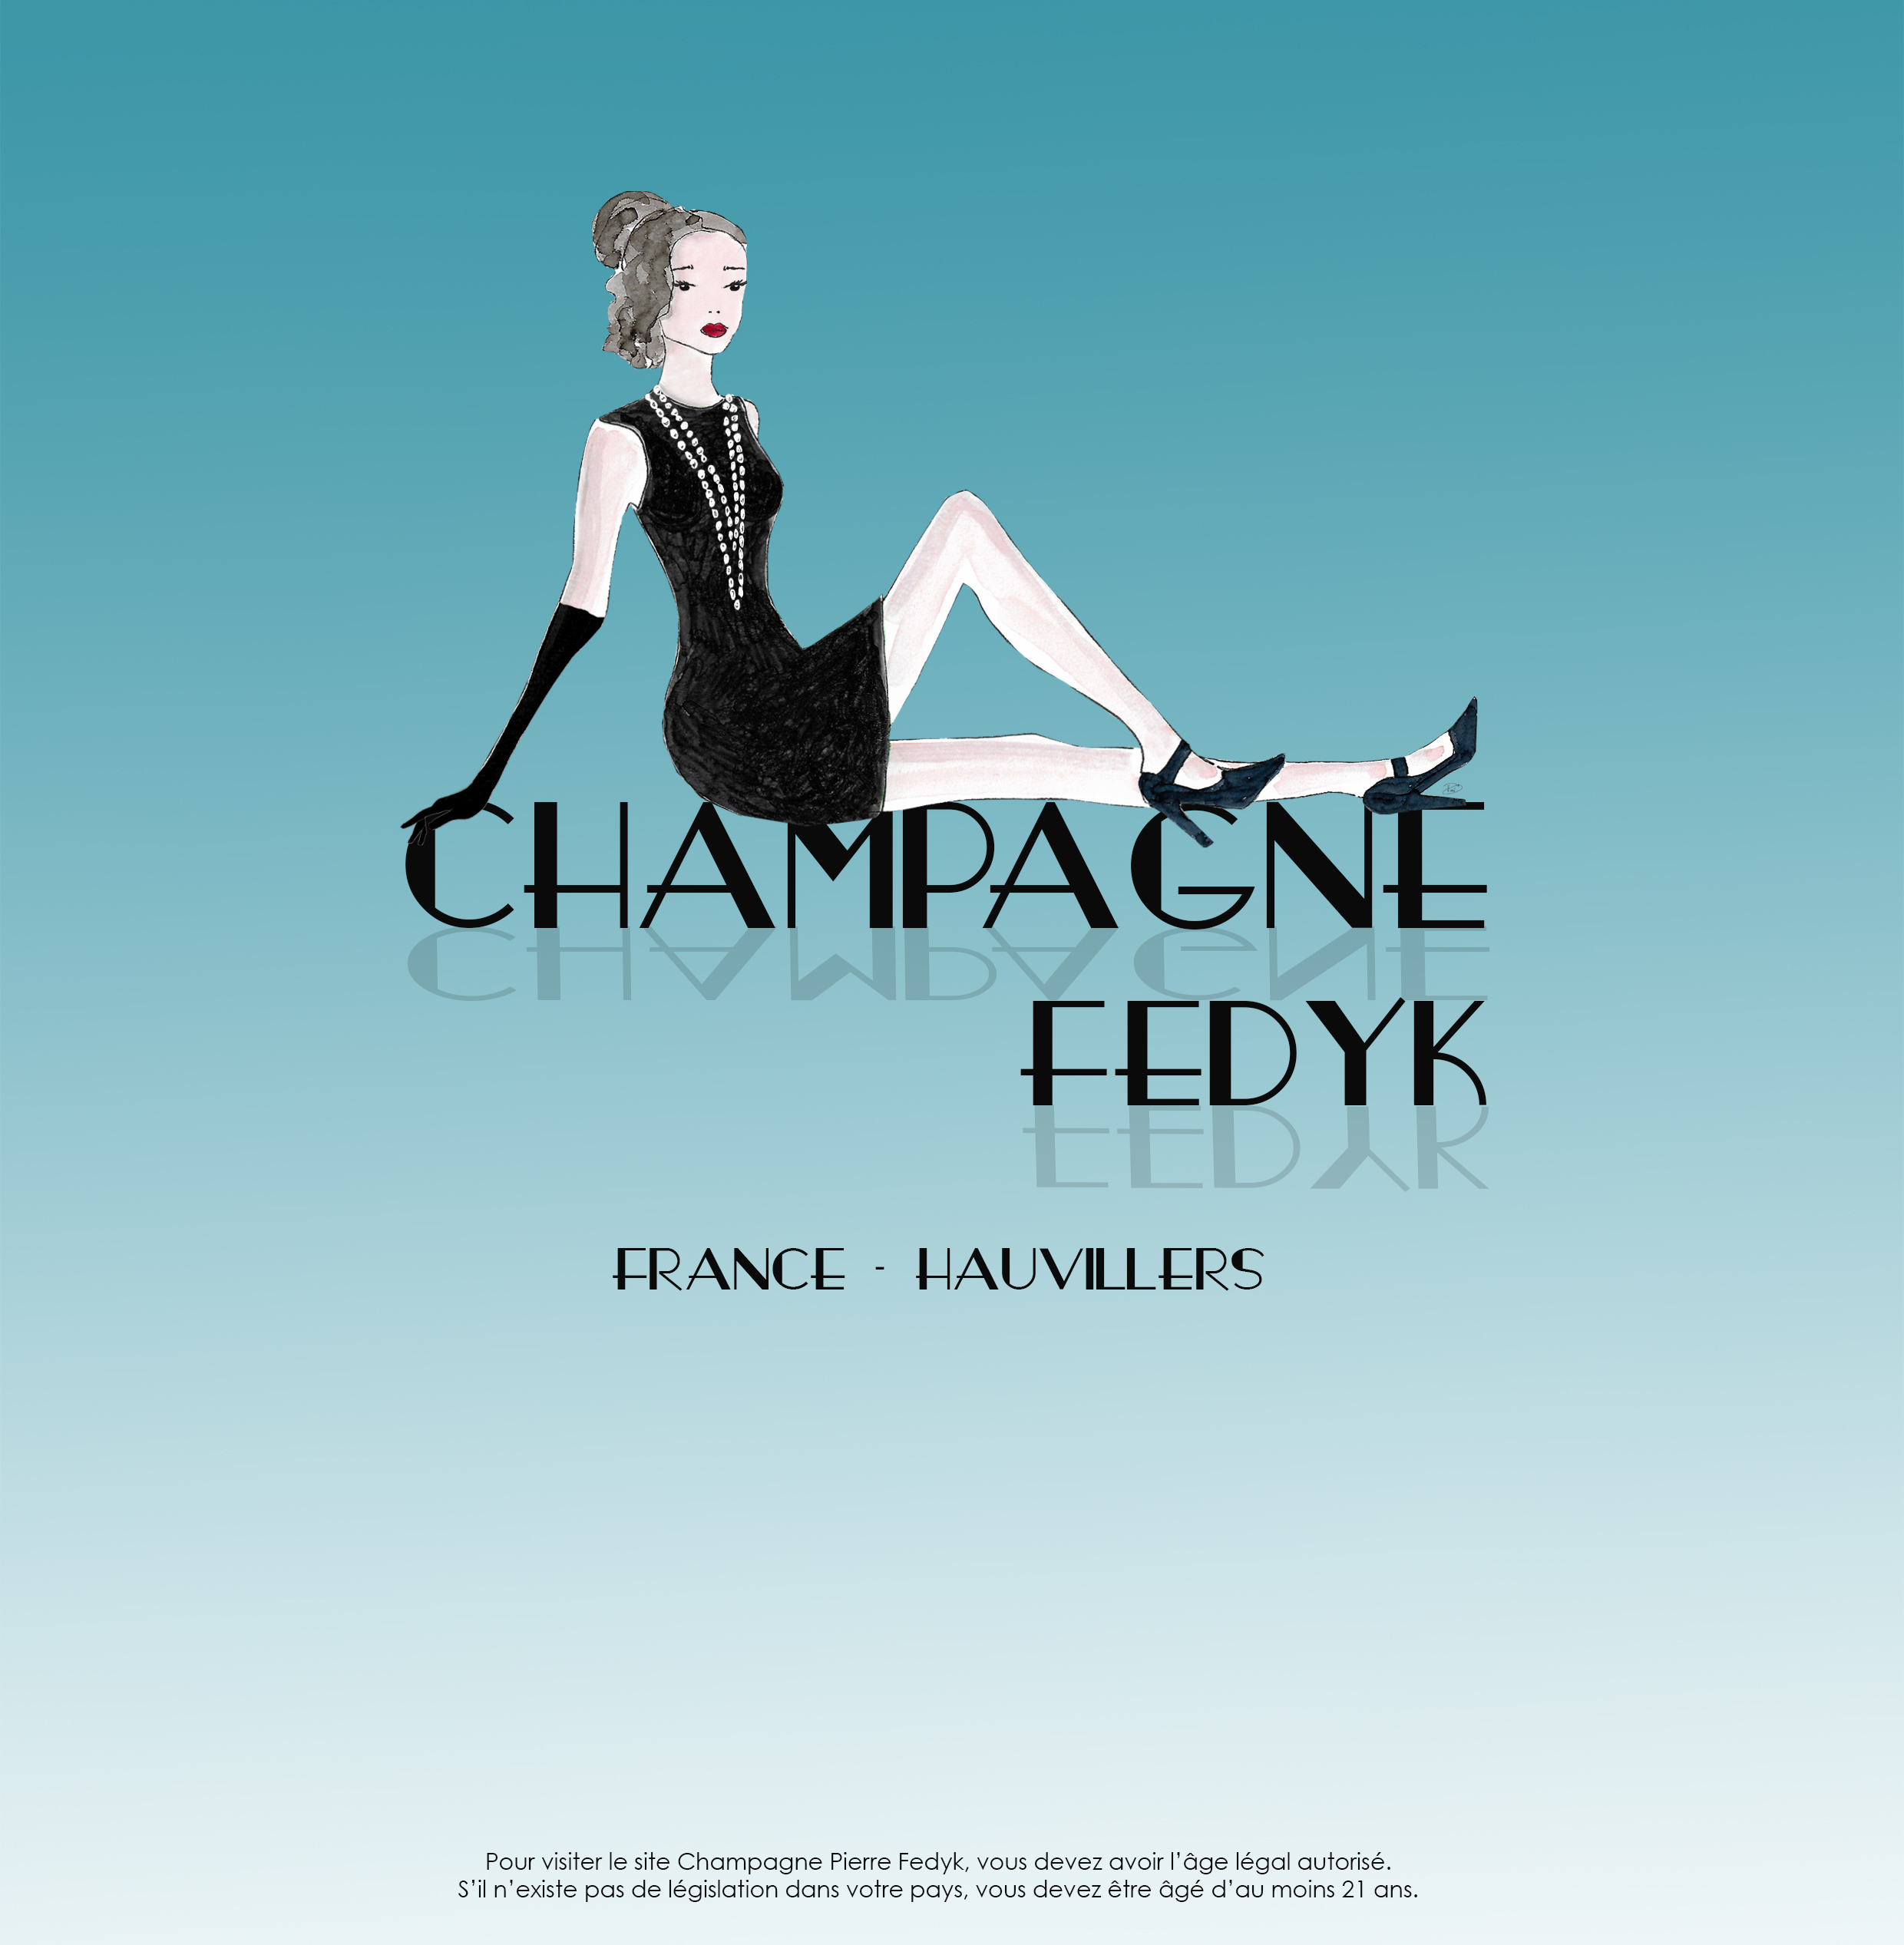 Champagne-fedyk